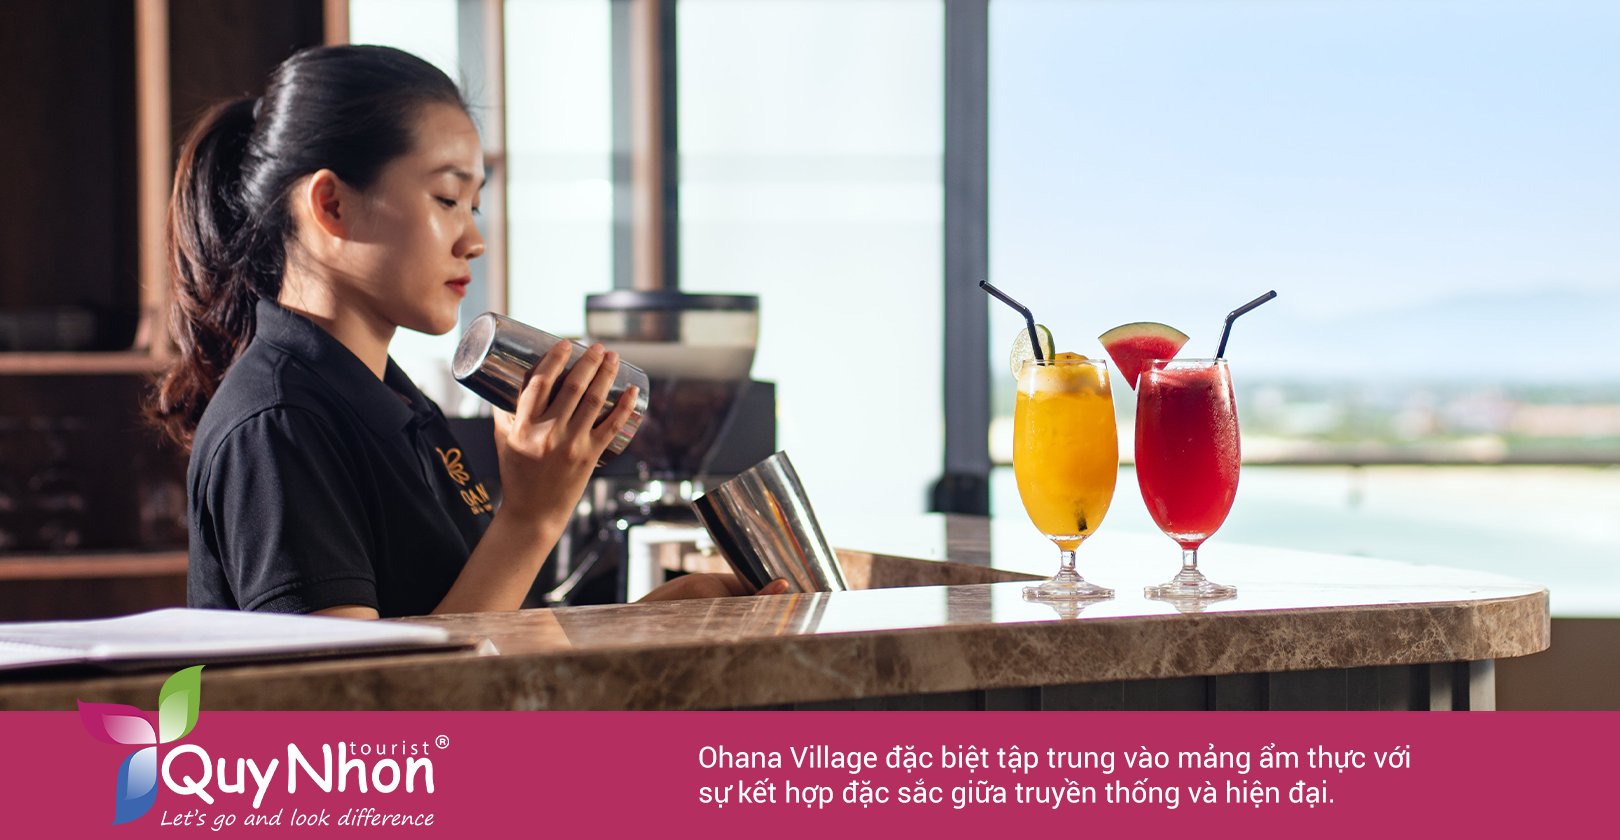 Ohana Village đặc biệt tập trung vào mảng ẩm thực với sự kết hợp đặc sắc giữa truyền thống và hiện đại.